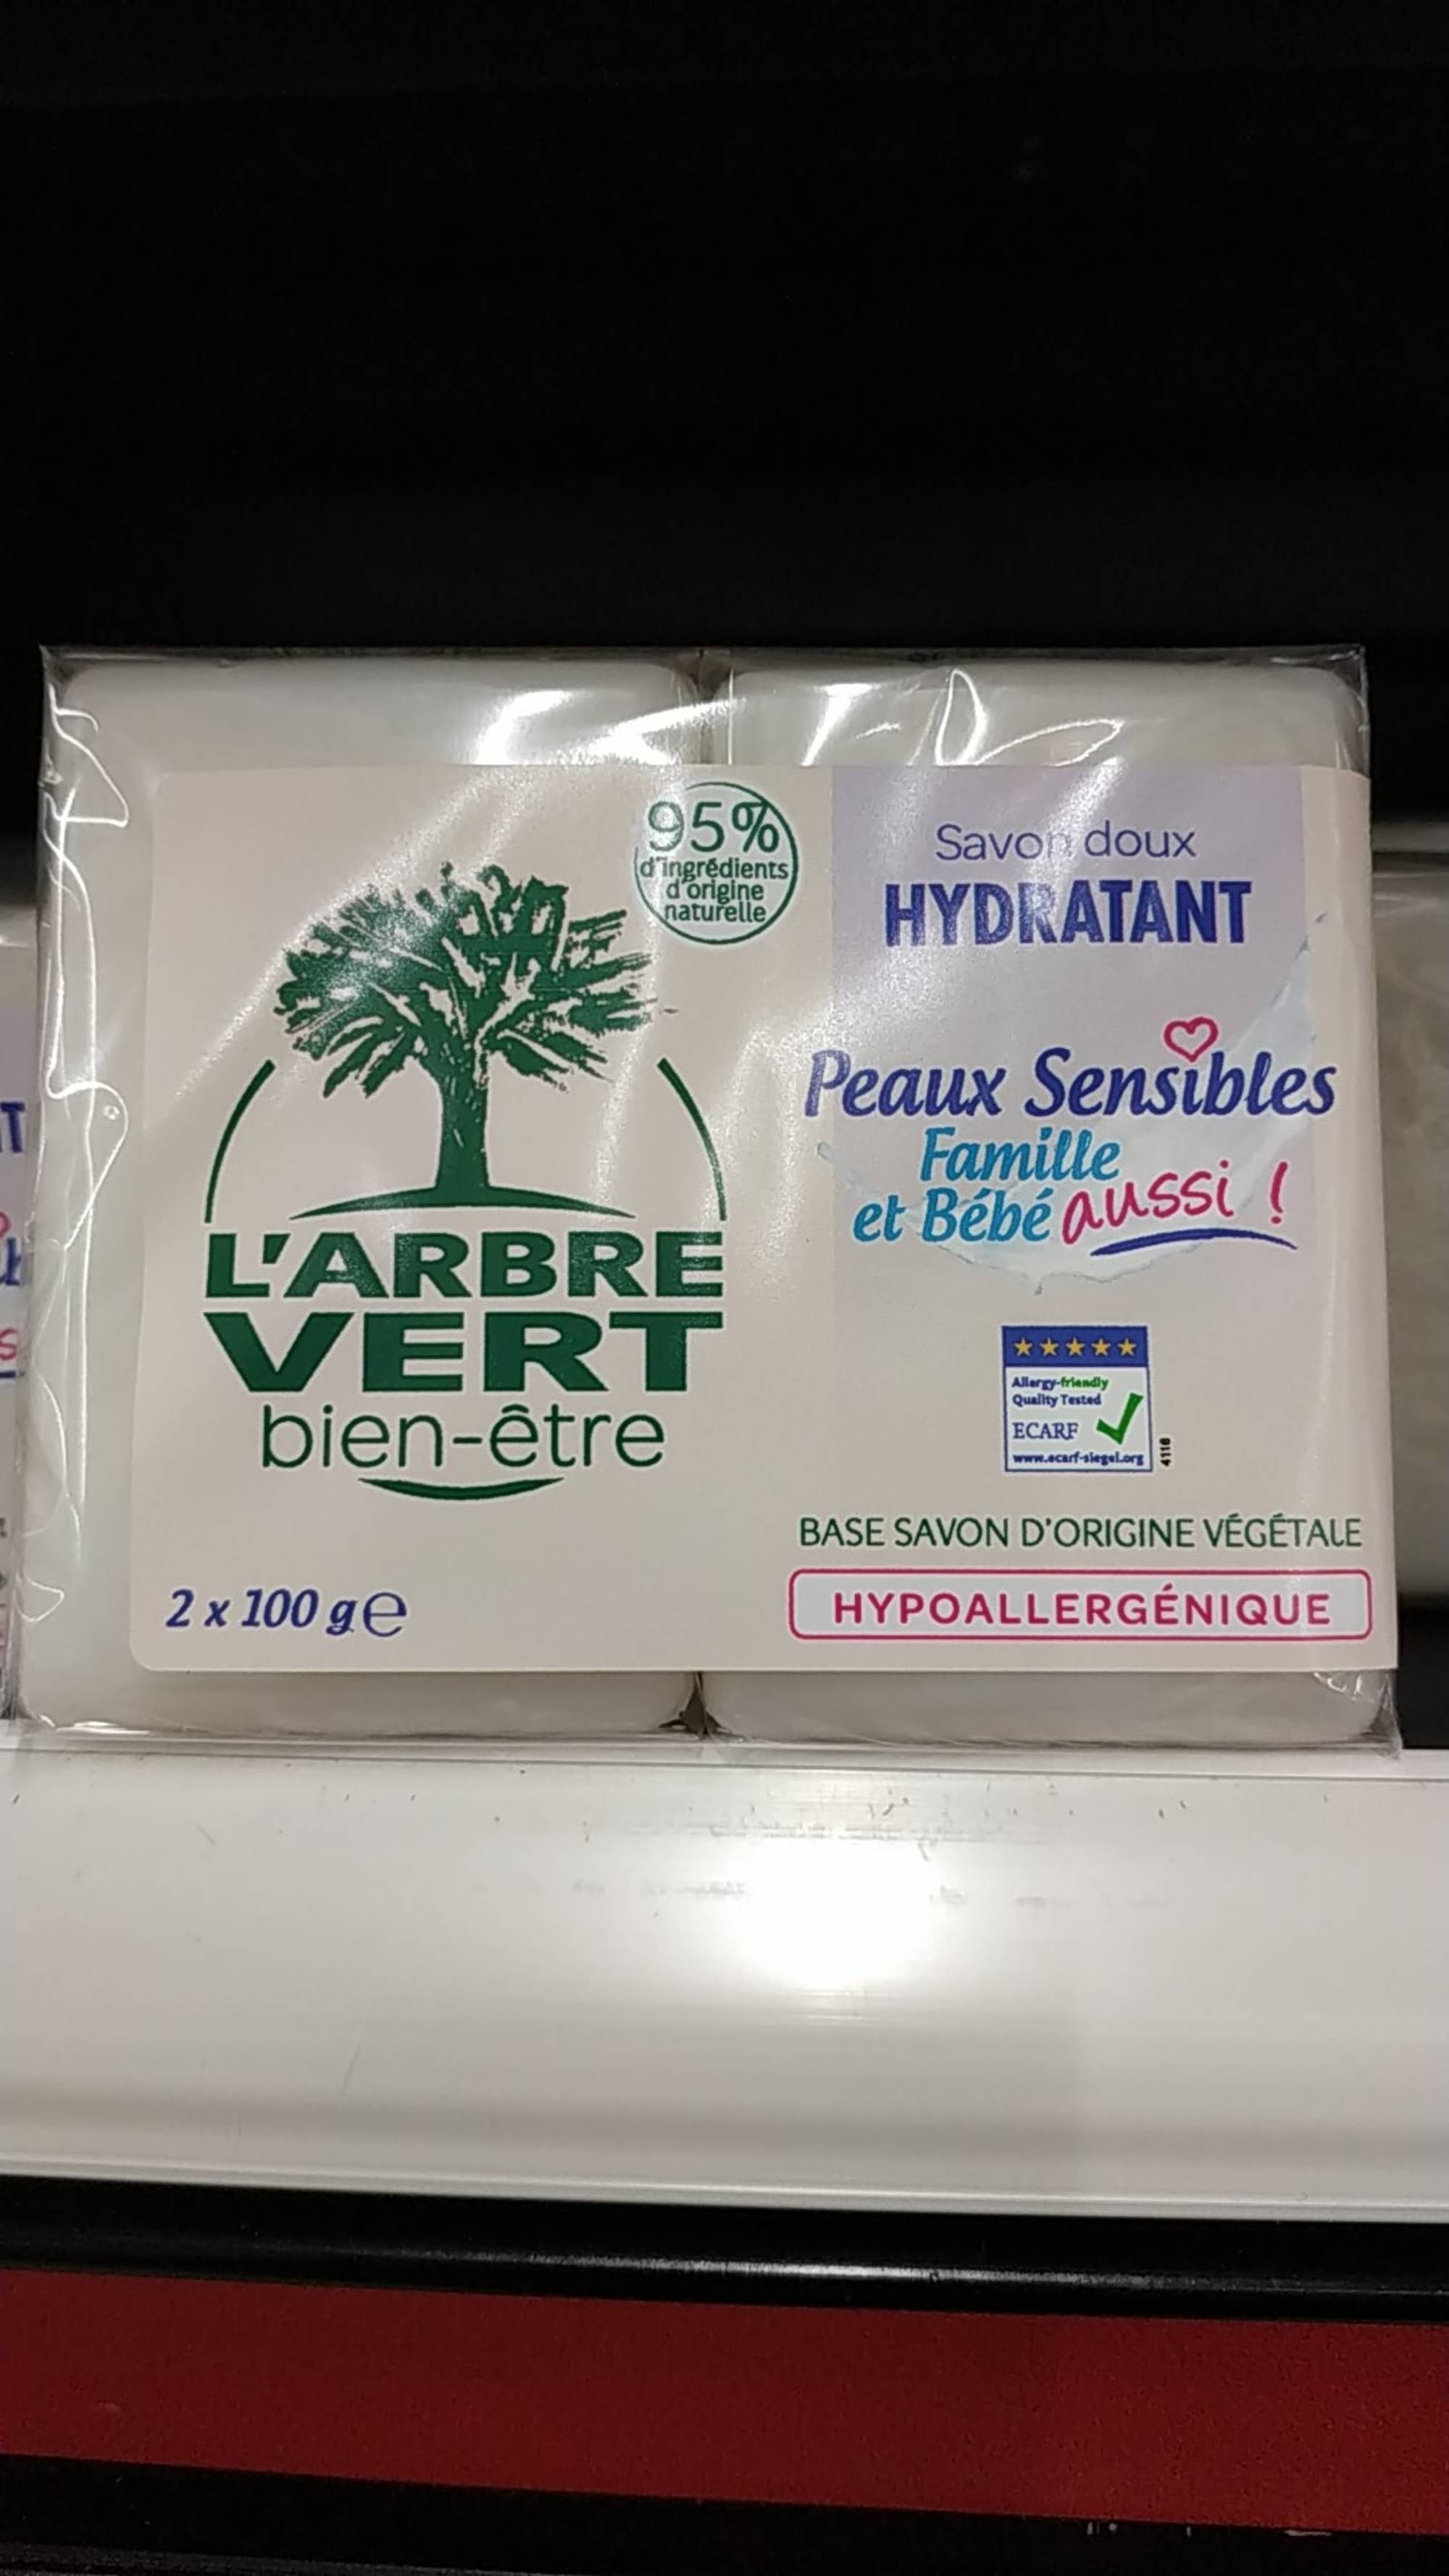 L'ARBRE VERT - Savon doux hydratant peaux sensibles